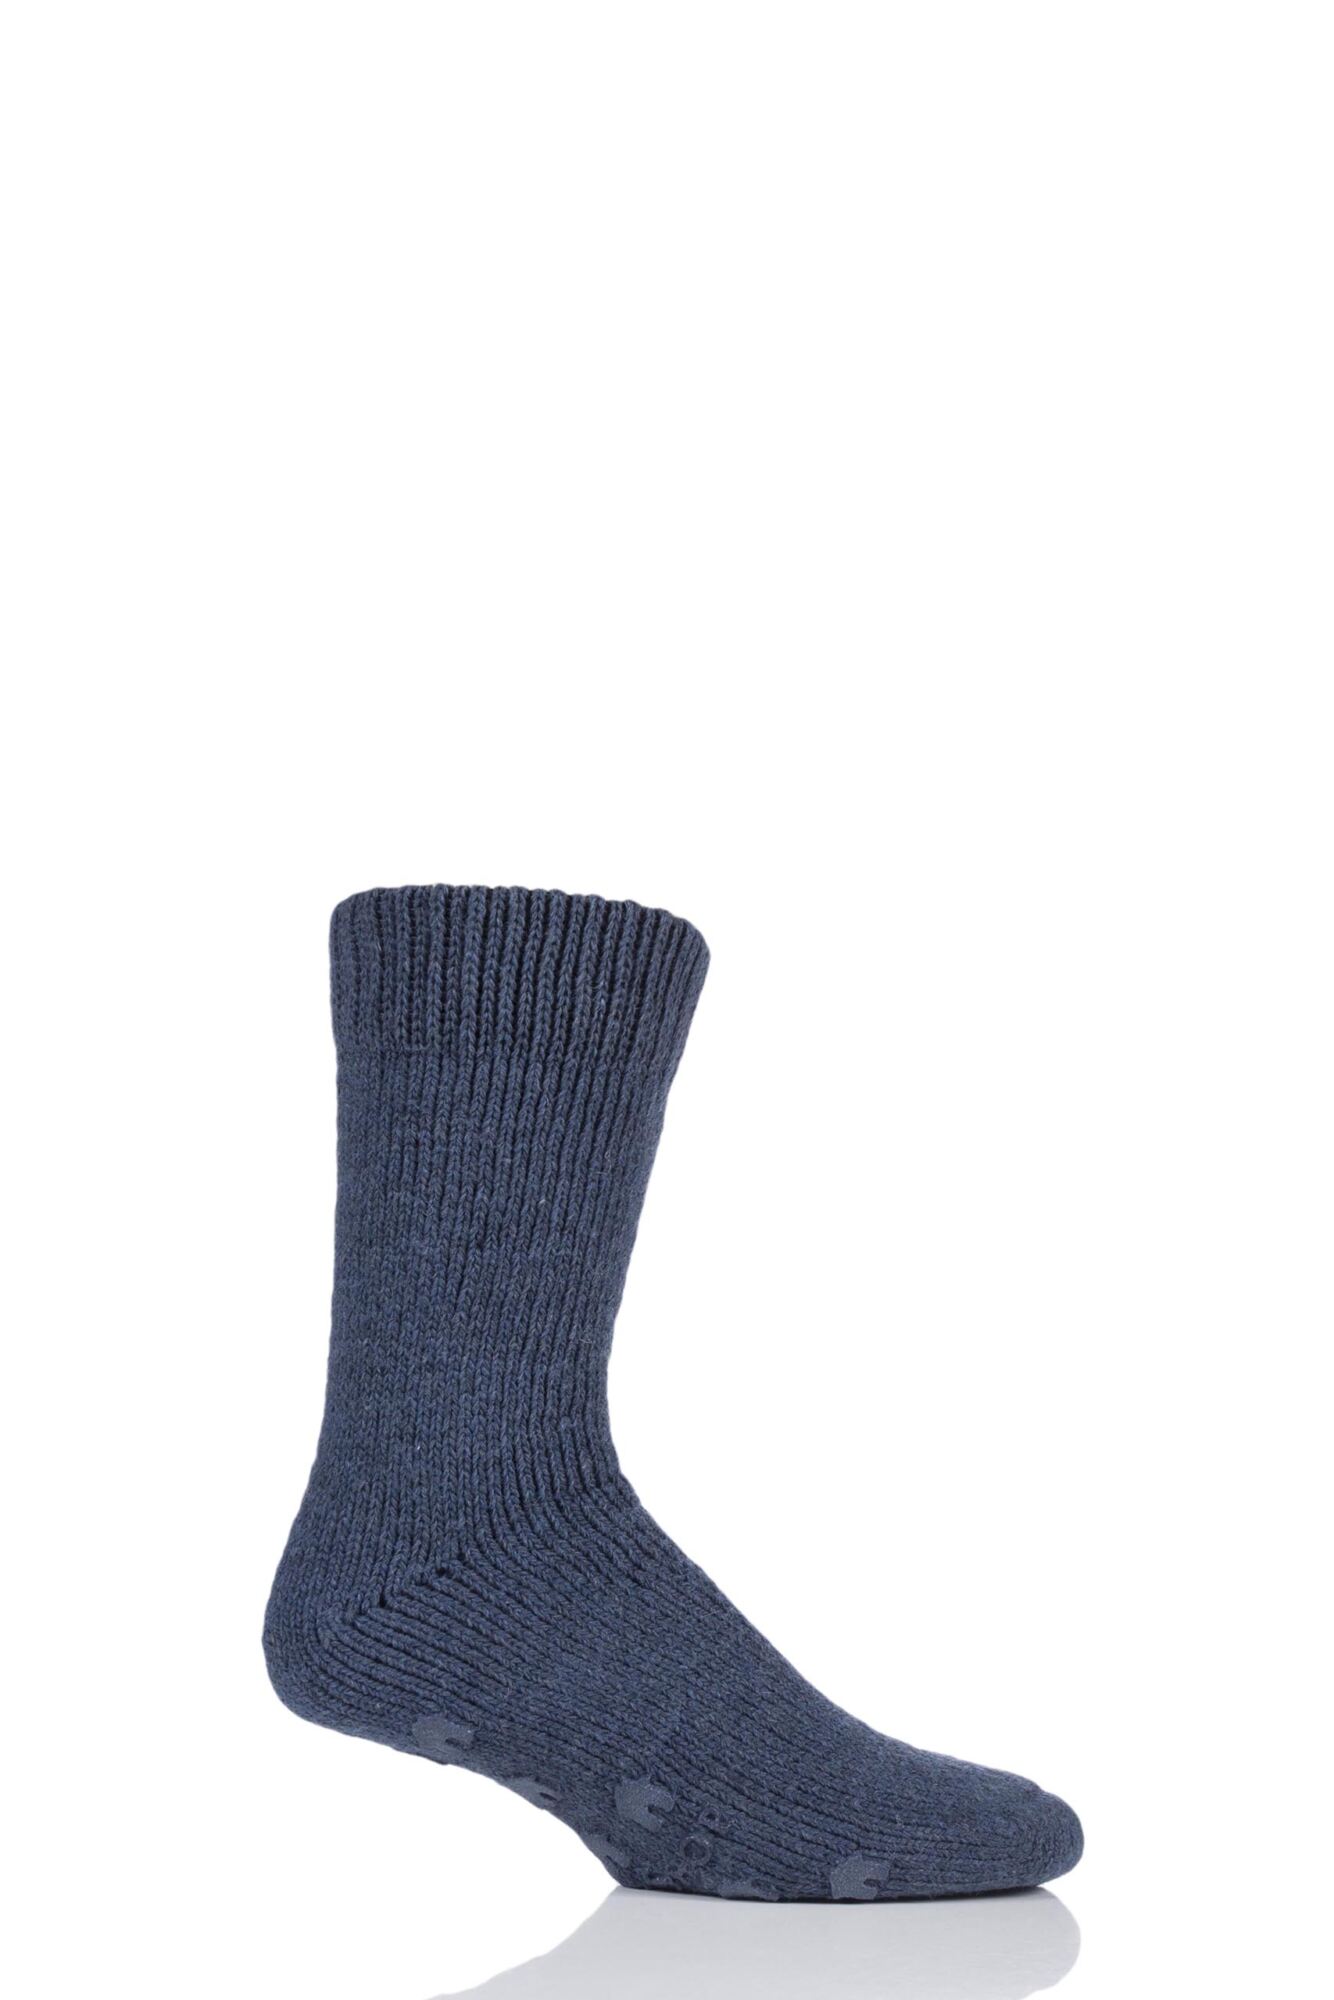 1 Pair Natural Home Slipper Socks Unisex - SOCKSHOP